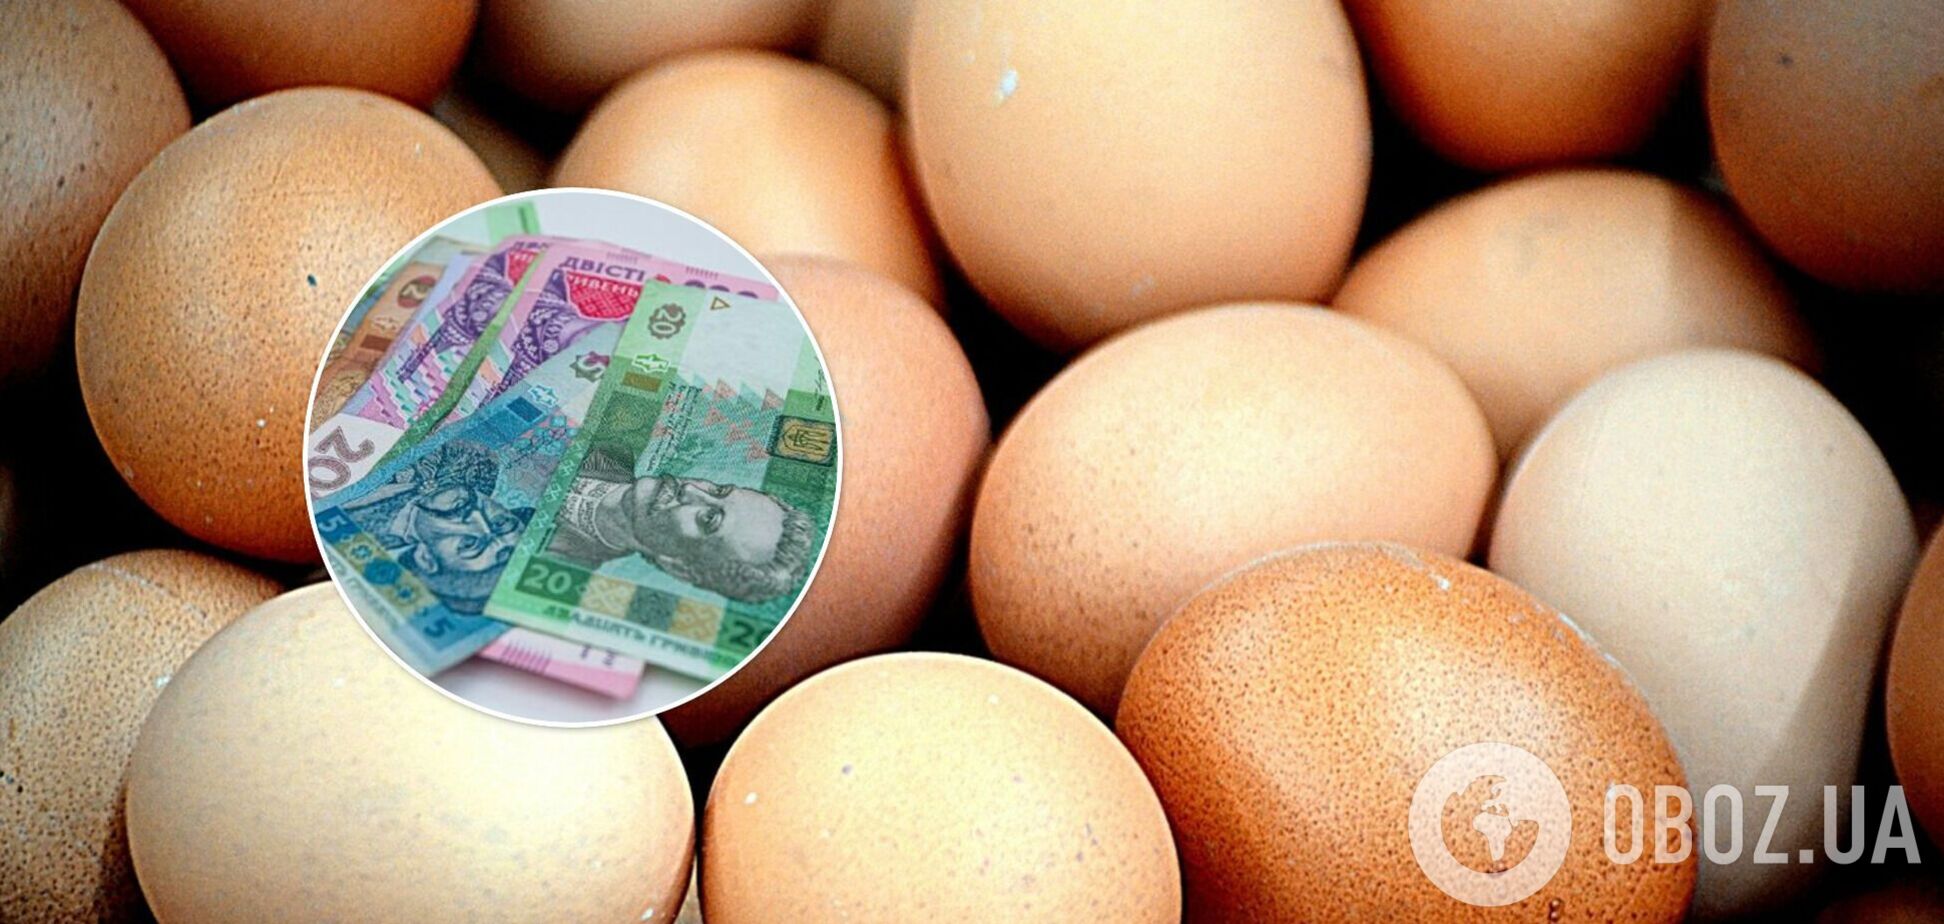 Цены на яйца в Украине выросли: когда закончится подорожание